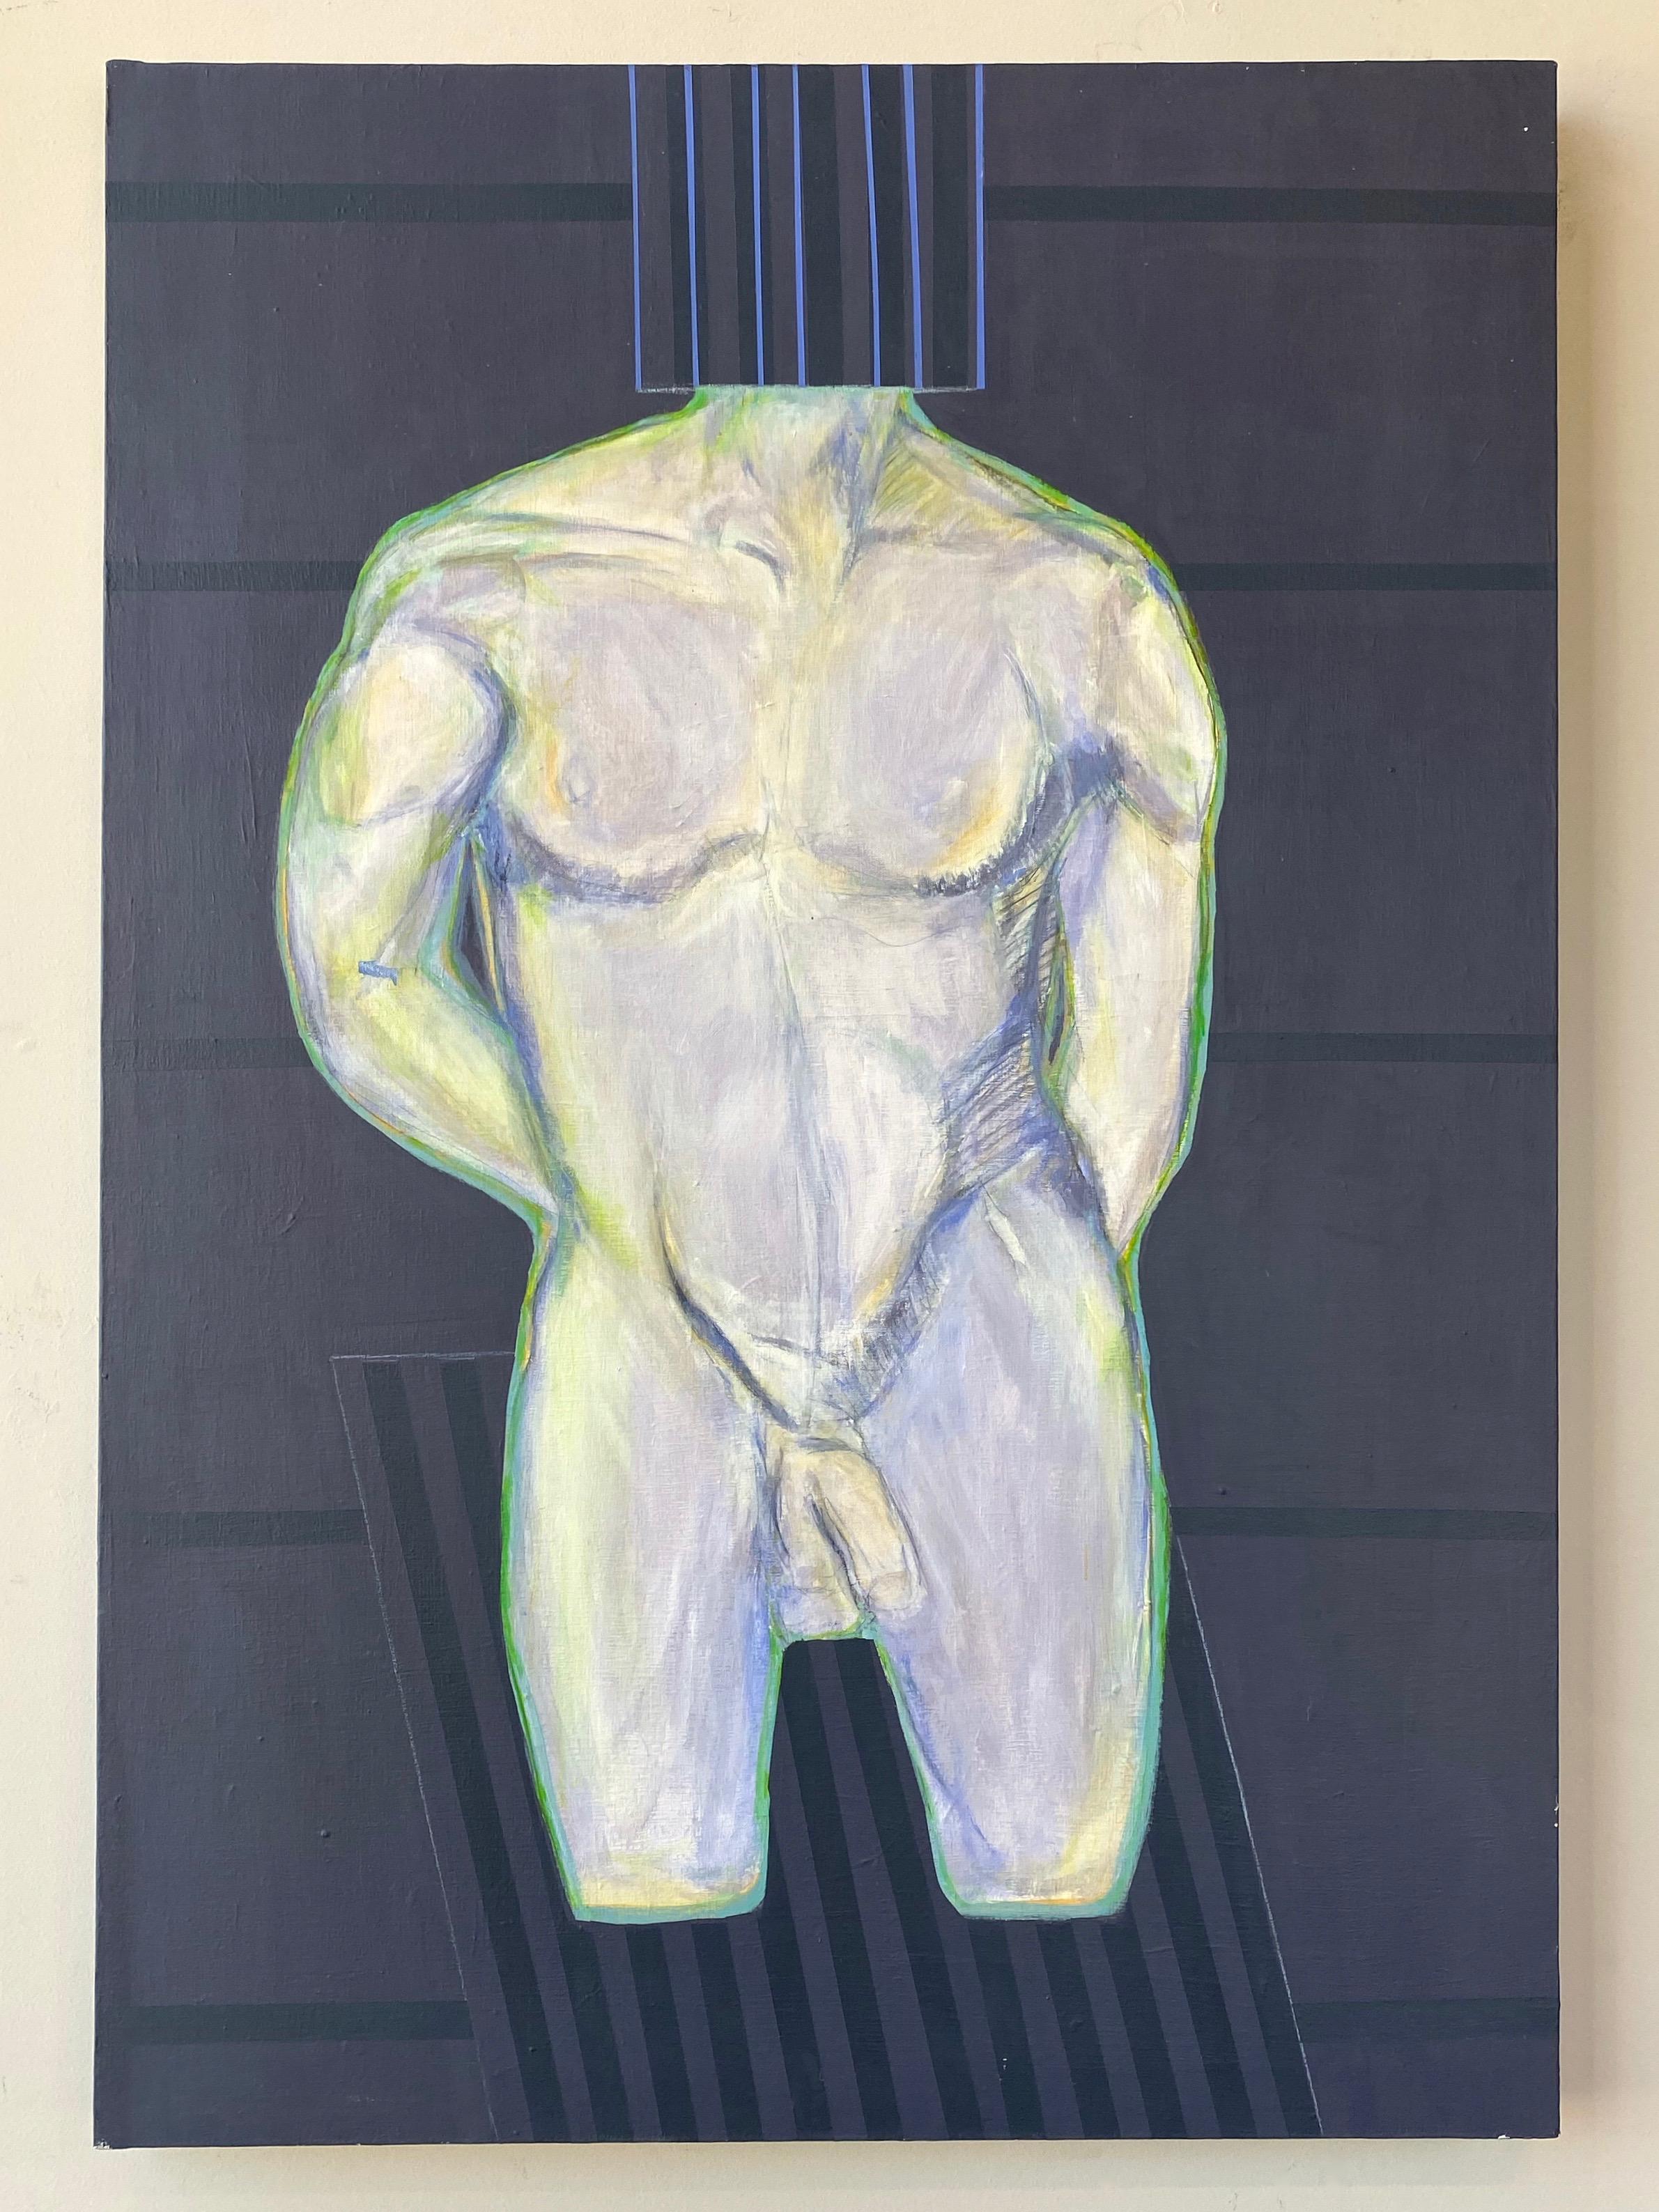 Une grande et saisissante peinture acrylique expressionniste abstraite des années 1980 représentant un torse nu masculin par Robert English.

Un homme très bien bâti, sans tête ni jambes, prend une pose décontractée et assurée. Le sujet, qui